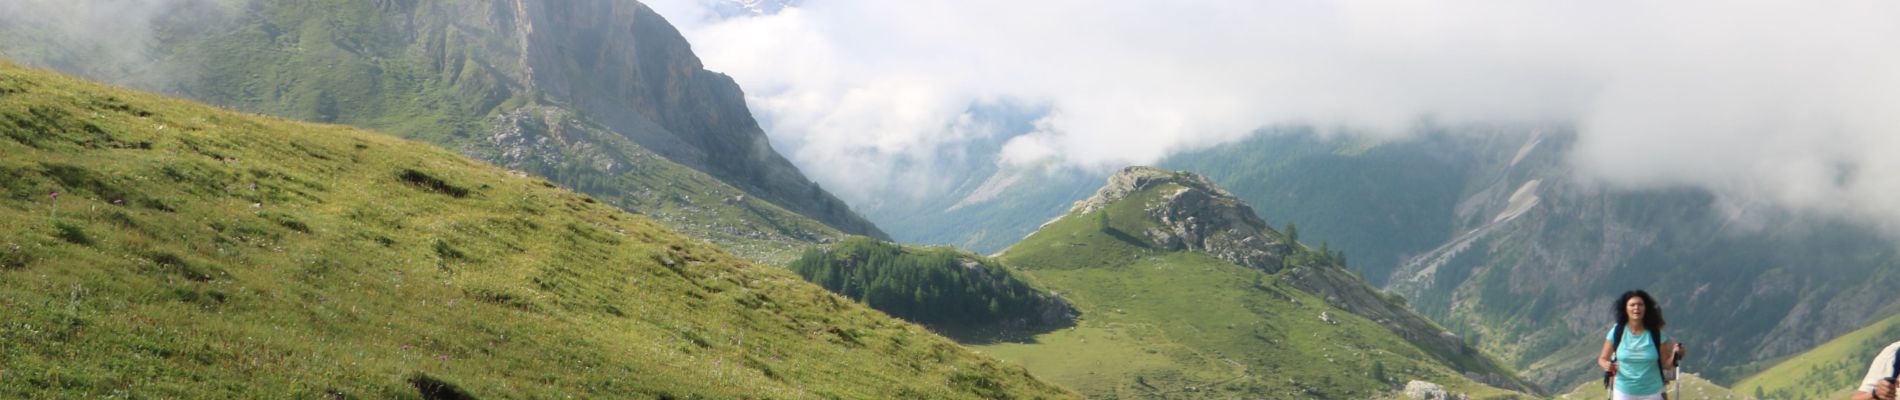 Randonnée Marche Acceglio - Valle del Maurin - Granges Collet - Lago della Sagna del Colle - Photo